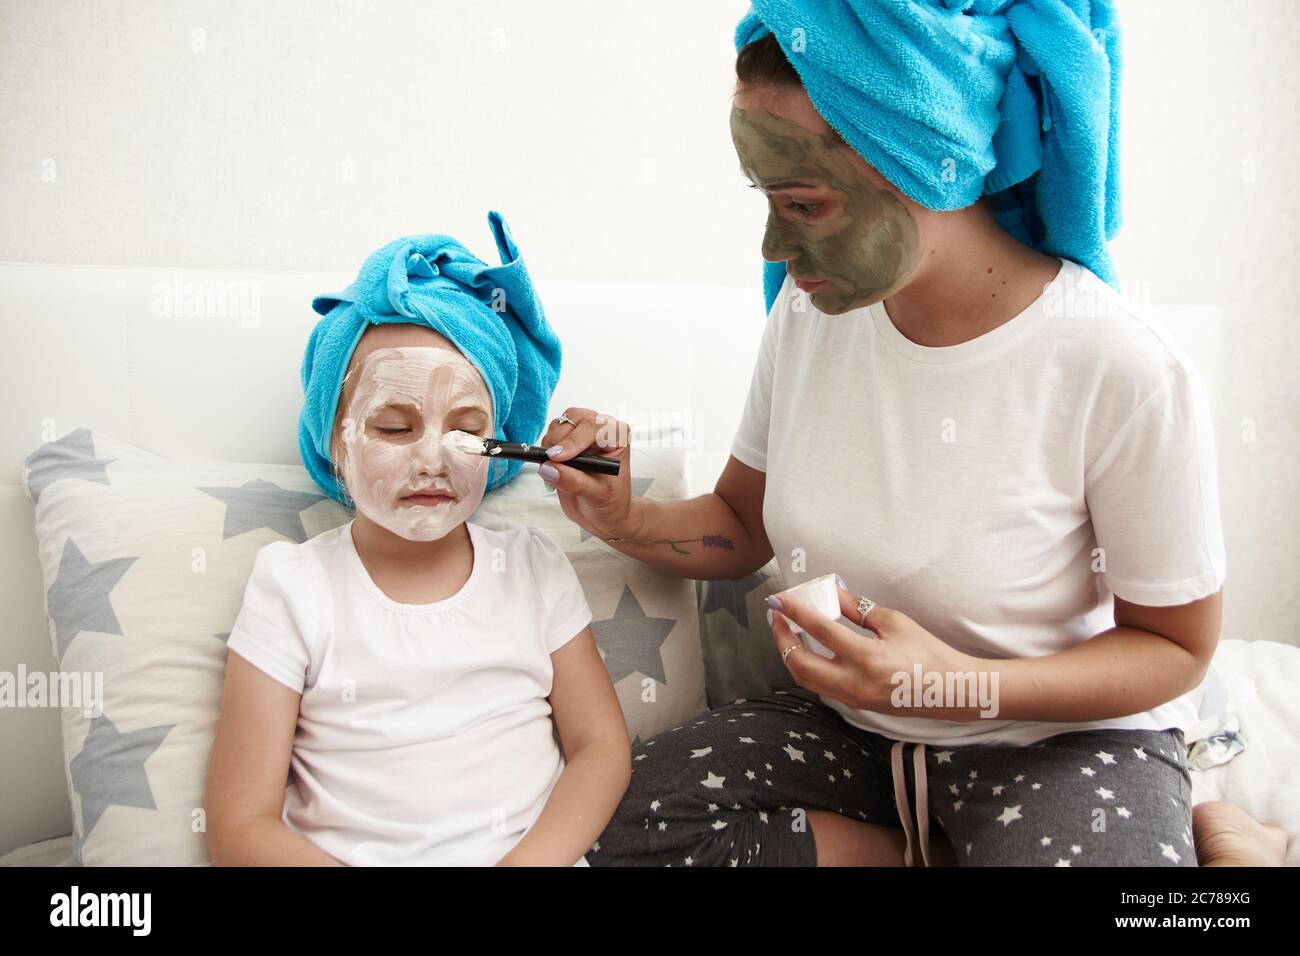 Nette junge Mutter und ihre Tochter sitzen auf dem Bett in Handtüchern auf ihrem Kopf und machen eine Gesichtsmaske. Hautpflege, Familienbeziehungen. Stockfoto